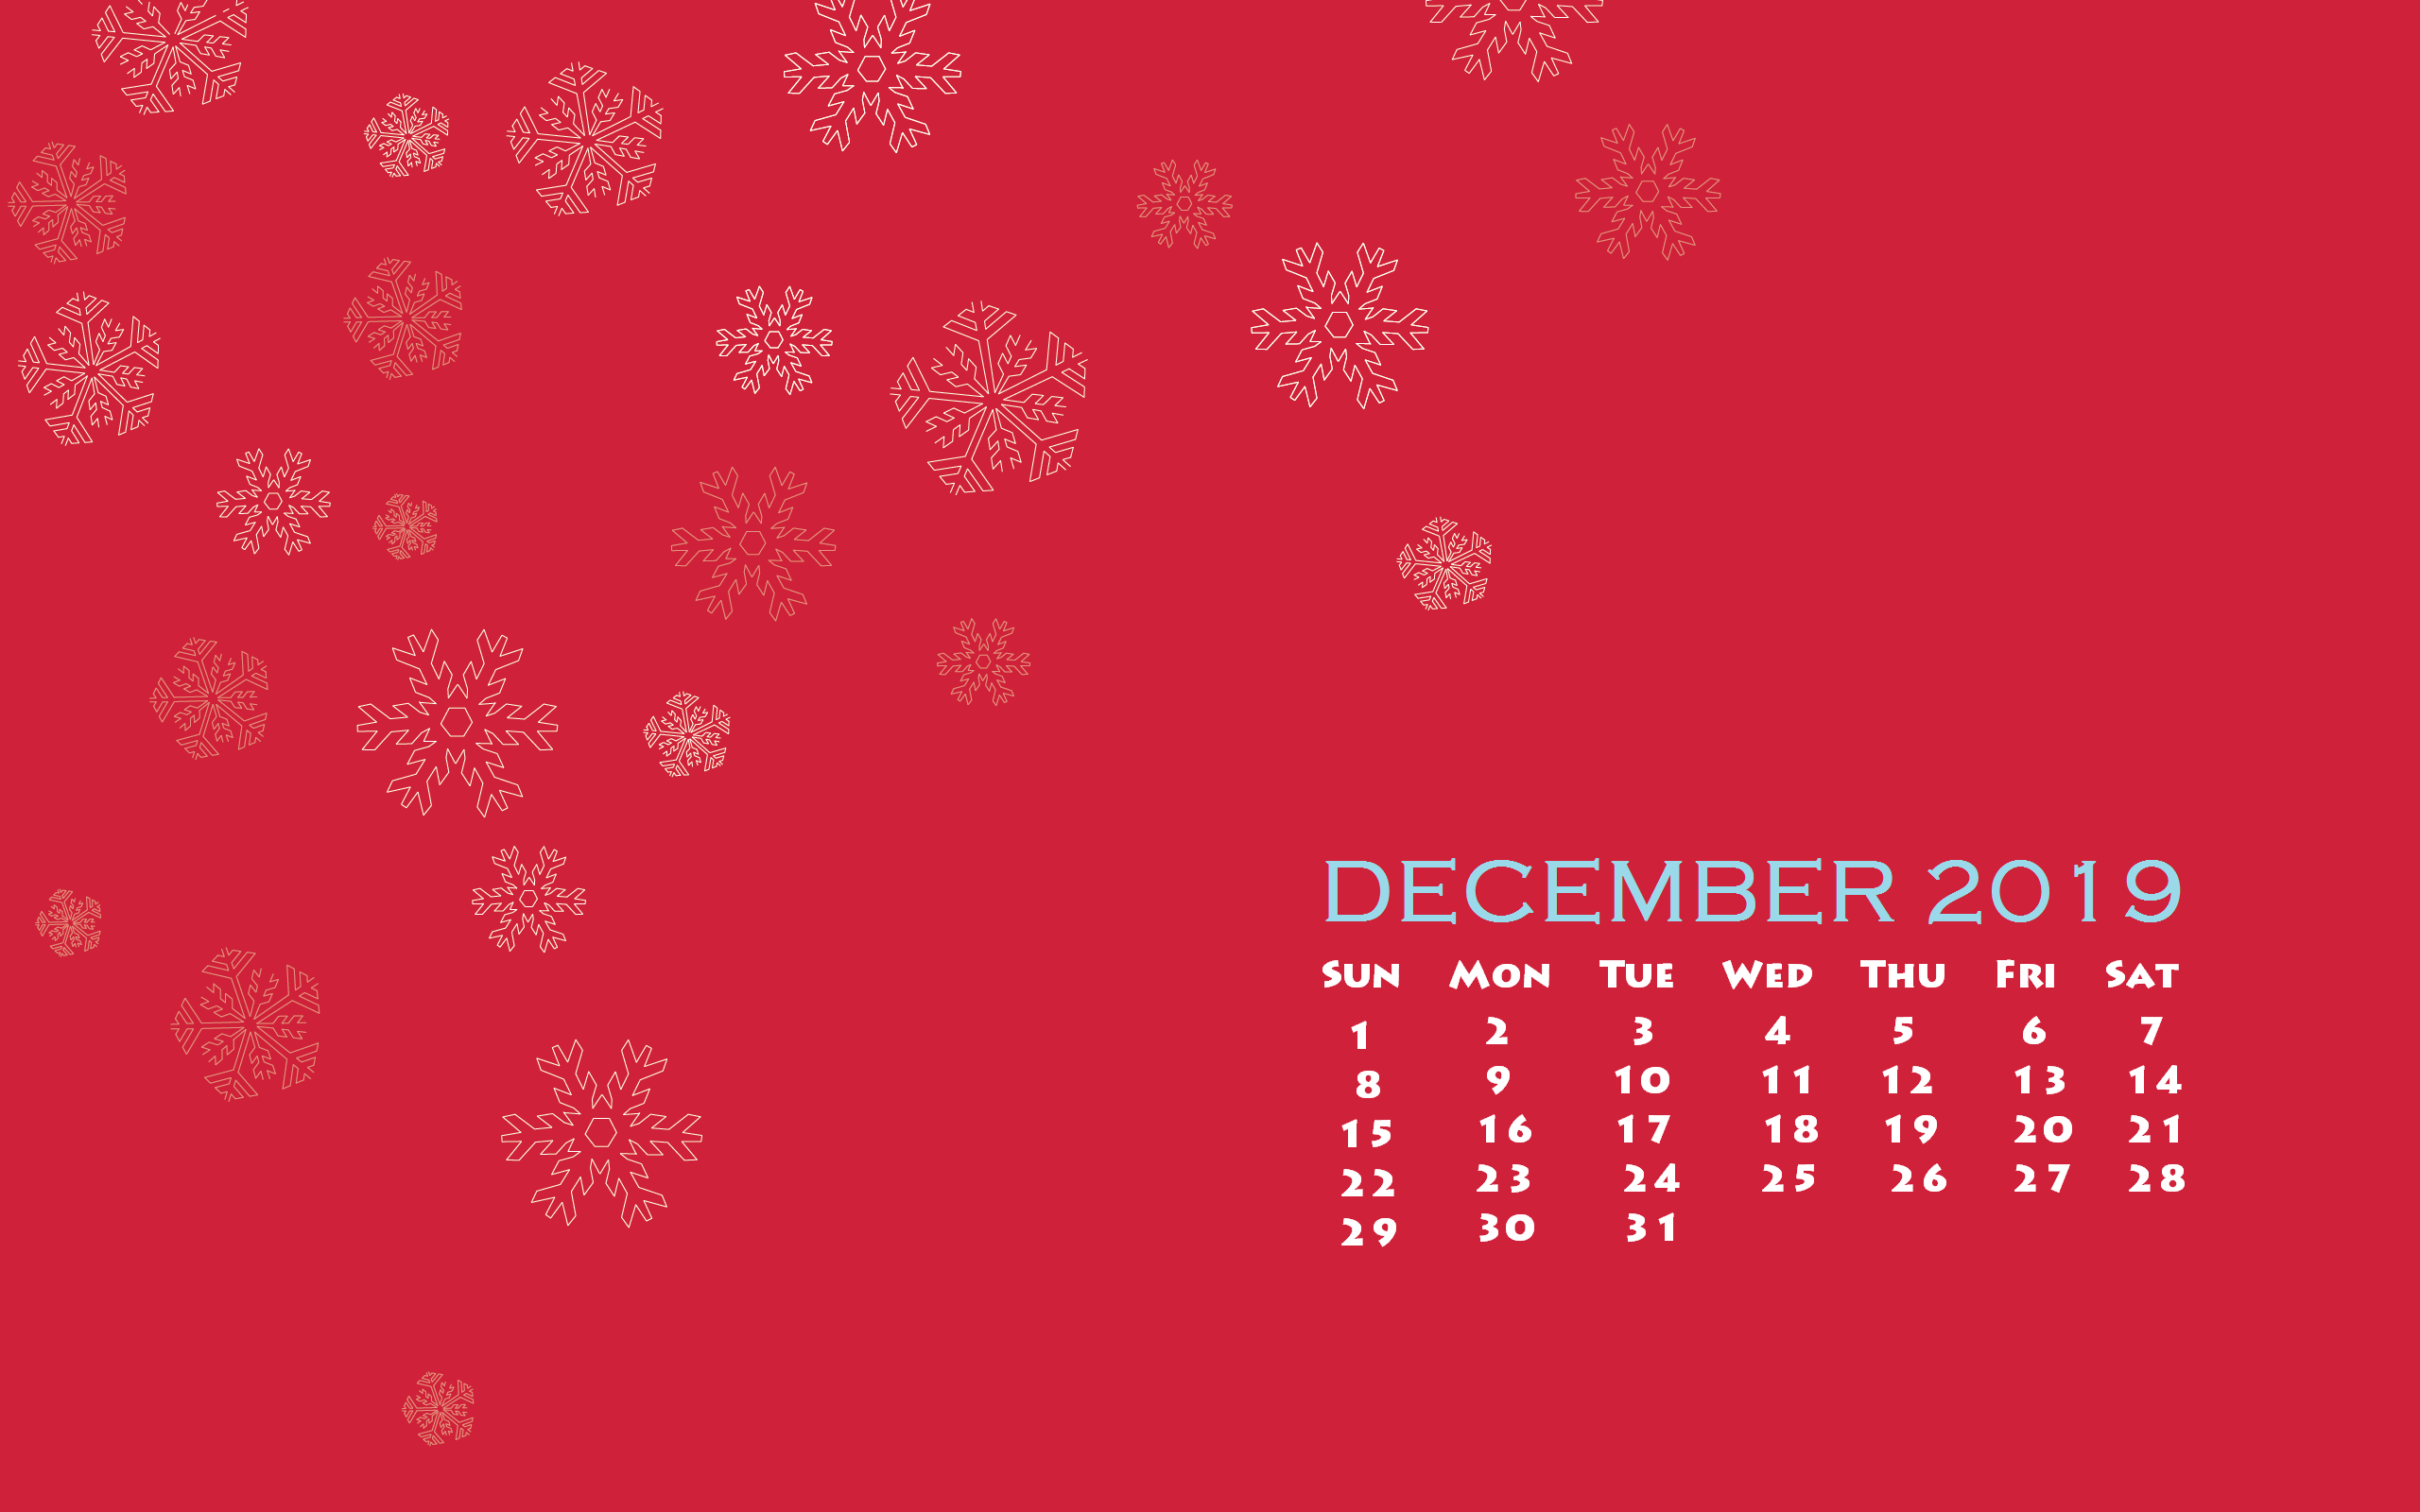 December 2019 Desktop Calendar Wallpaper - December 2019 Calendar Wallpaper Desktop - HD Wallpaper 